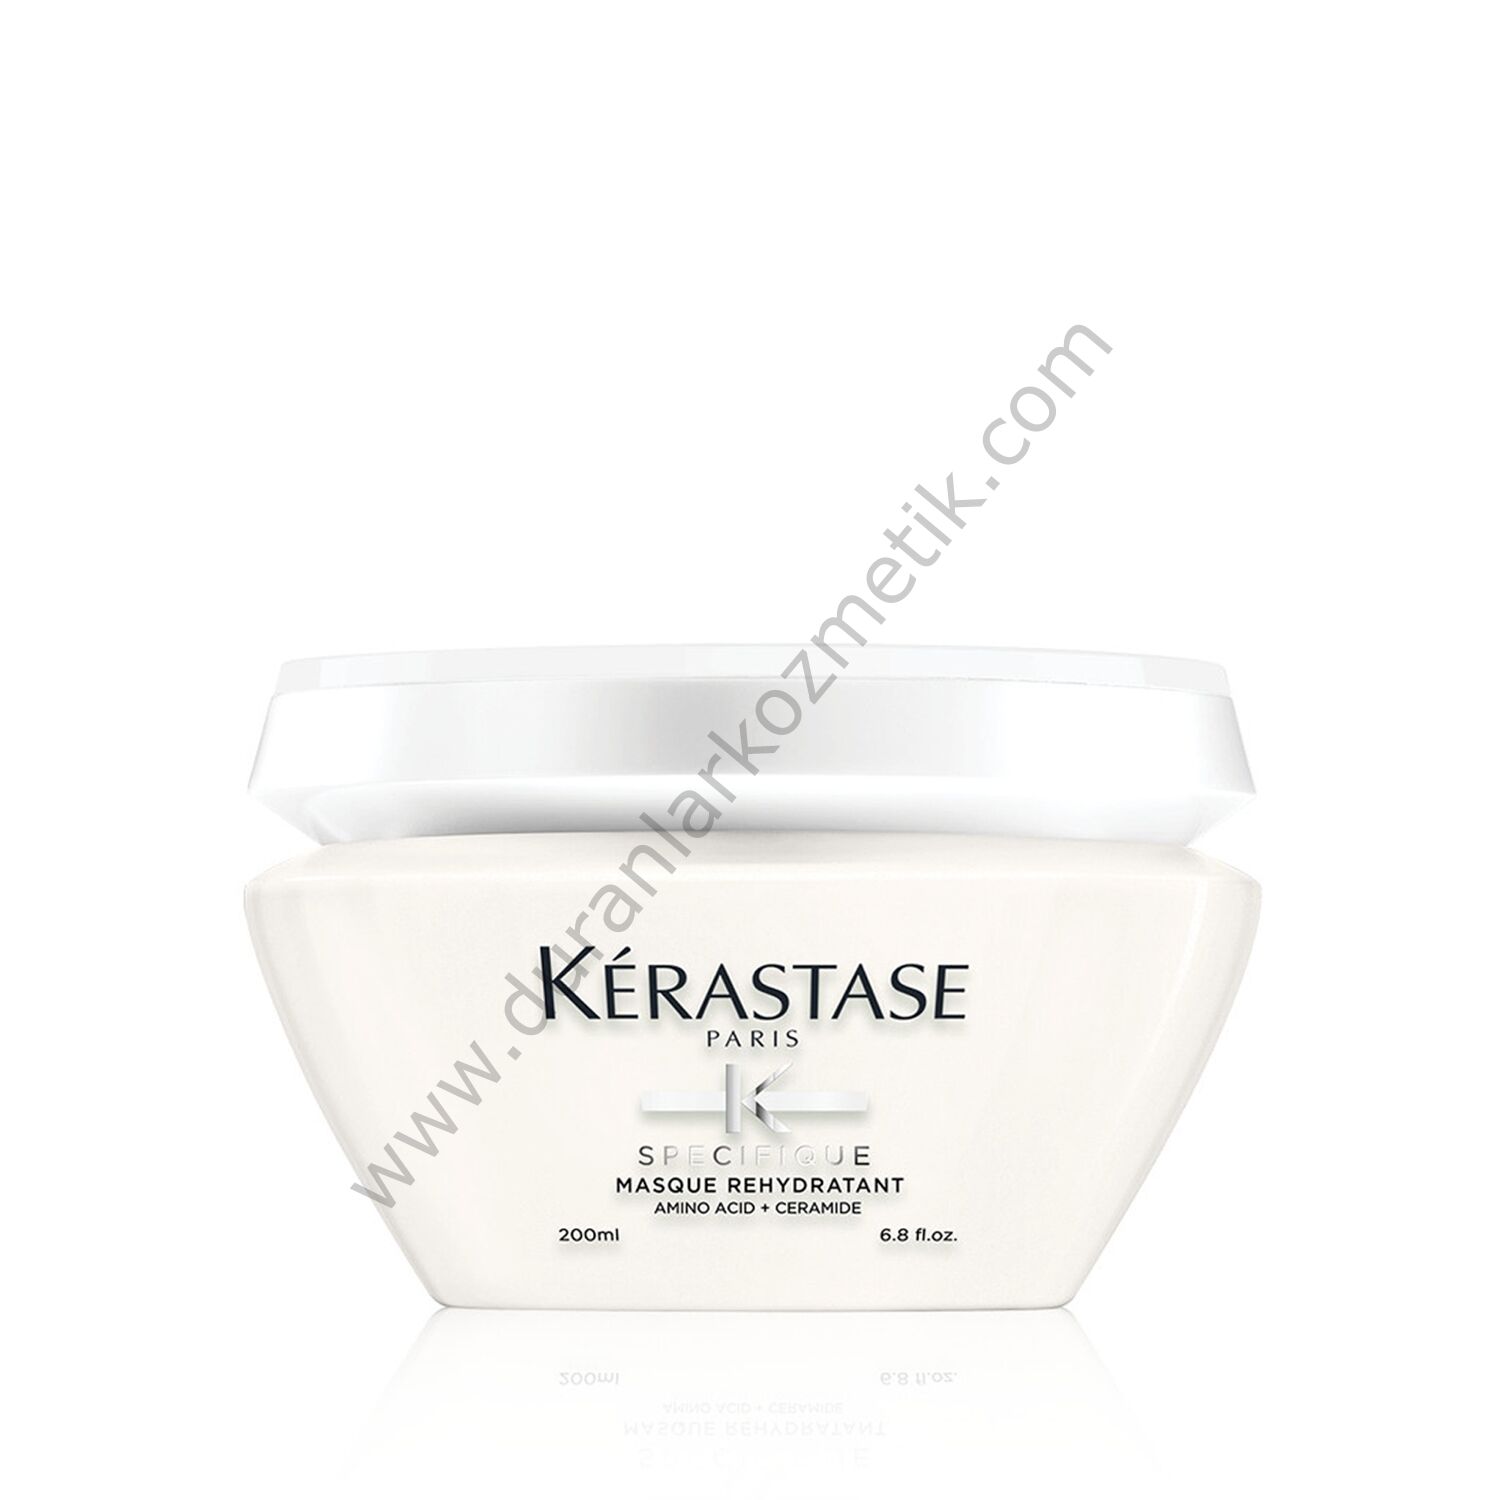 Kerastase Specifique Masque Rehydratant Yağlanma Karşıtı Maskesi200 ml